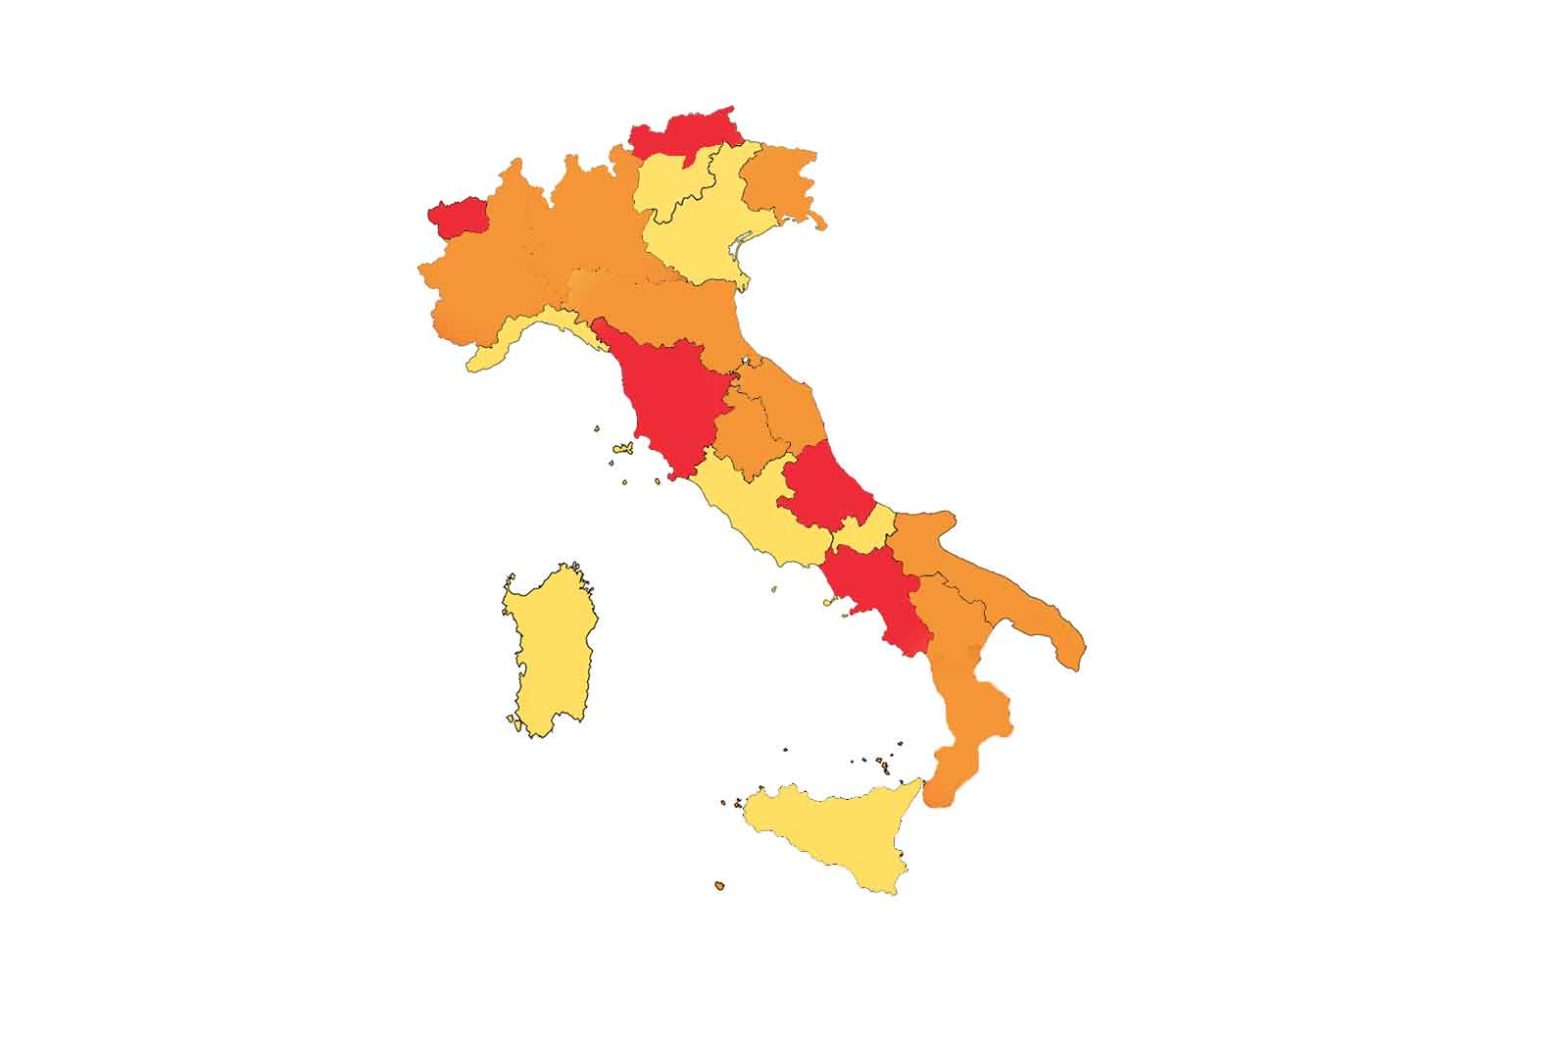 Italia a zone colori 29 novembre